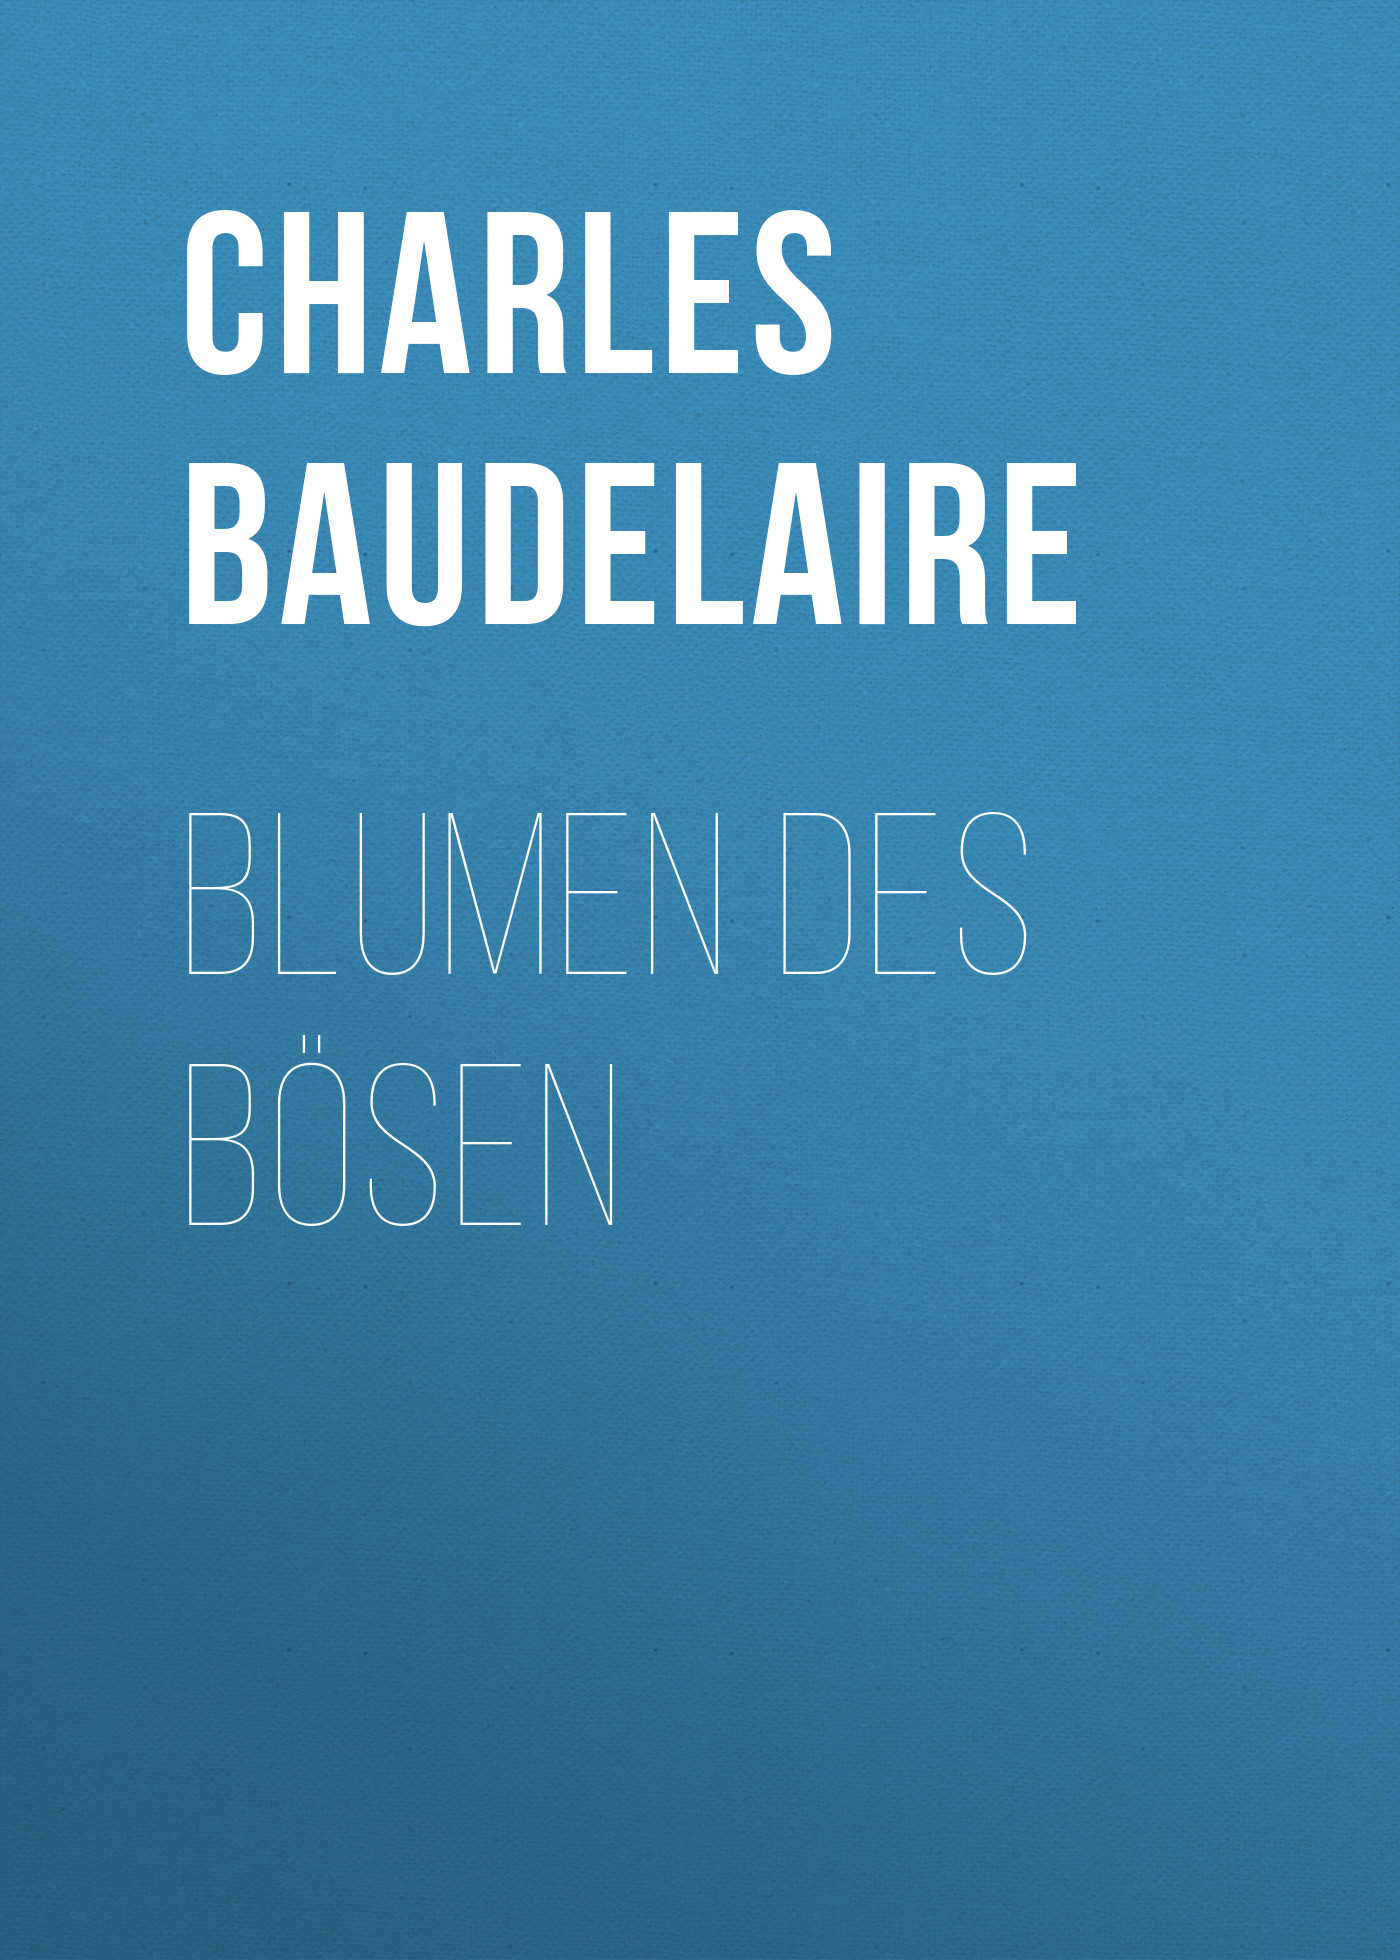 Книга Blumen des Bösen из серии , созданная Charles Baudelaire, может относится к жанру Зарубежная классика. Стоимость электронной книги Blumen des Bösen с идентификатором 48633100 составляет 0 руб.